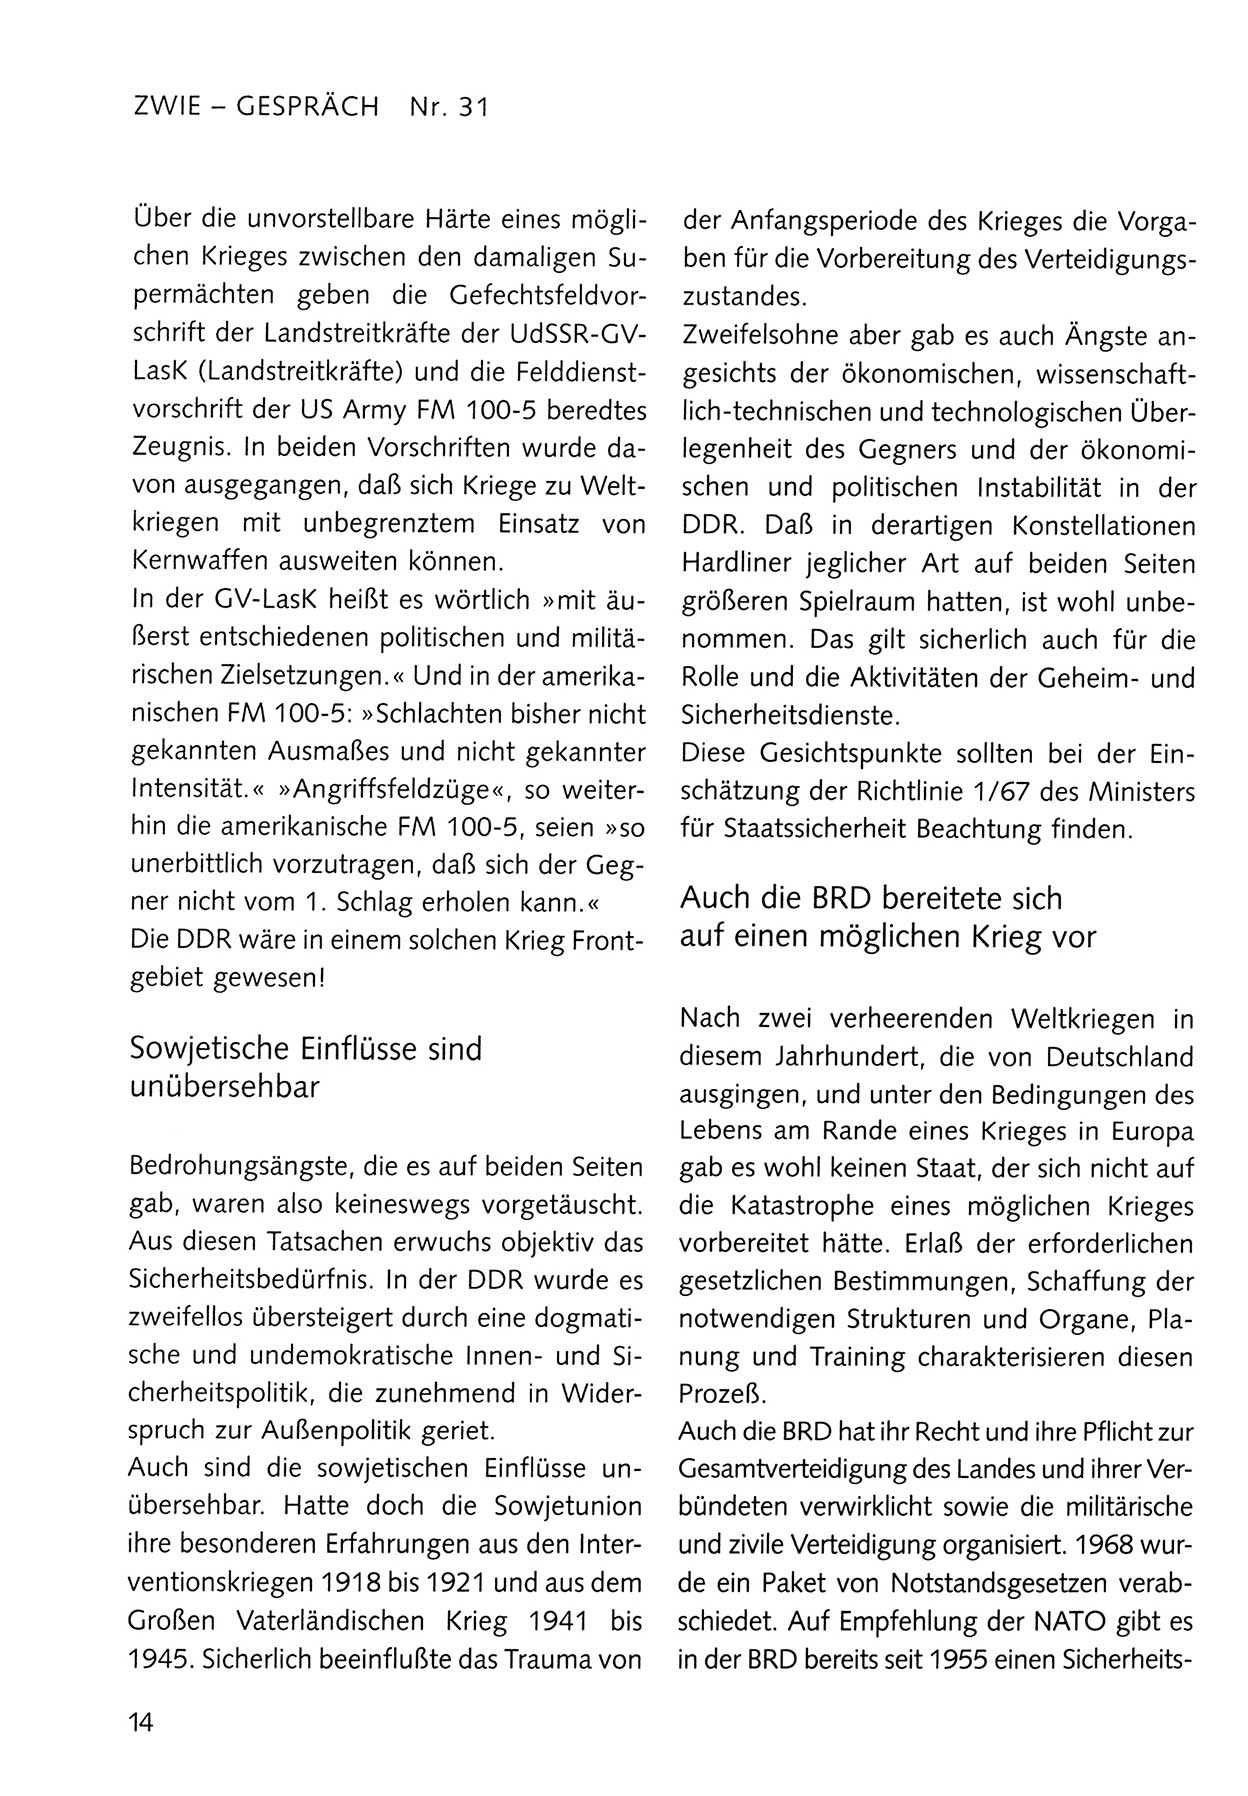 Zwie-Gespräch, Beiträge zum Umgang mit der Staatssicherheits-Vergangenheit [Deutsche Demokratische Republik (DDR)], Ausgabe Nr. 31, Berlin 1995, Seite 14 (Zwie-Gespr. Ausg. 31 1995, S. 14)